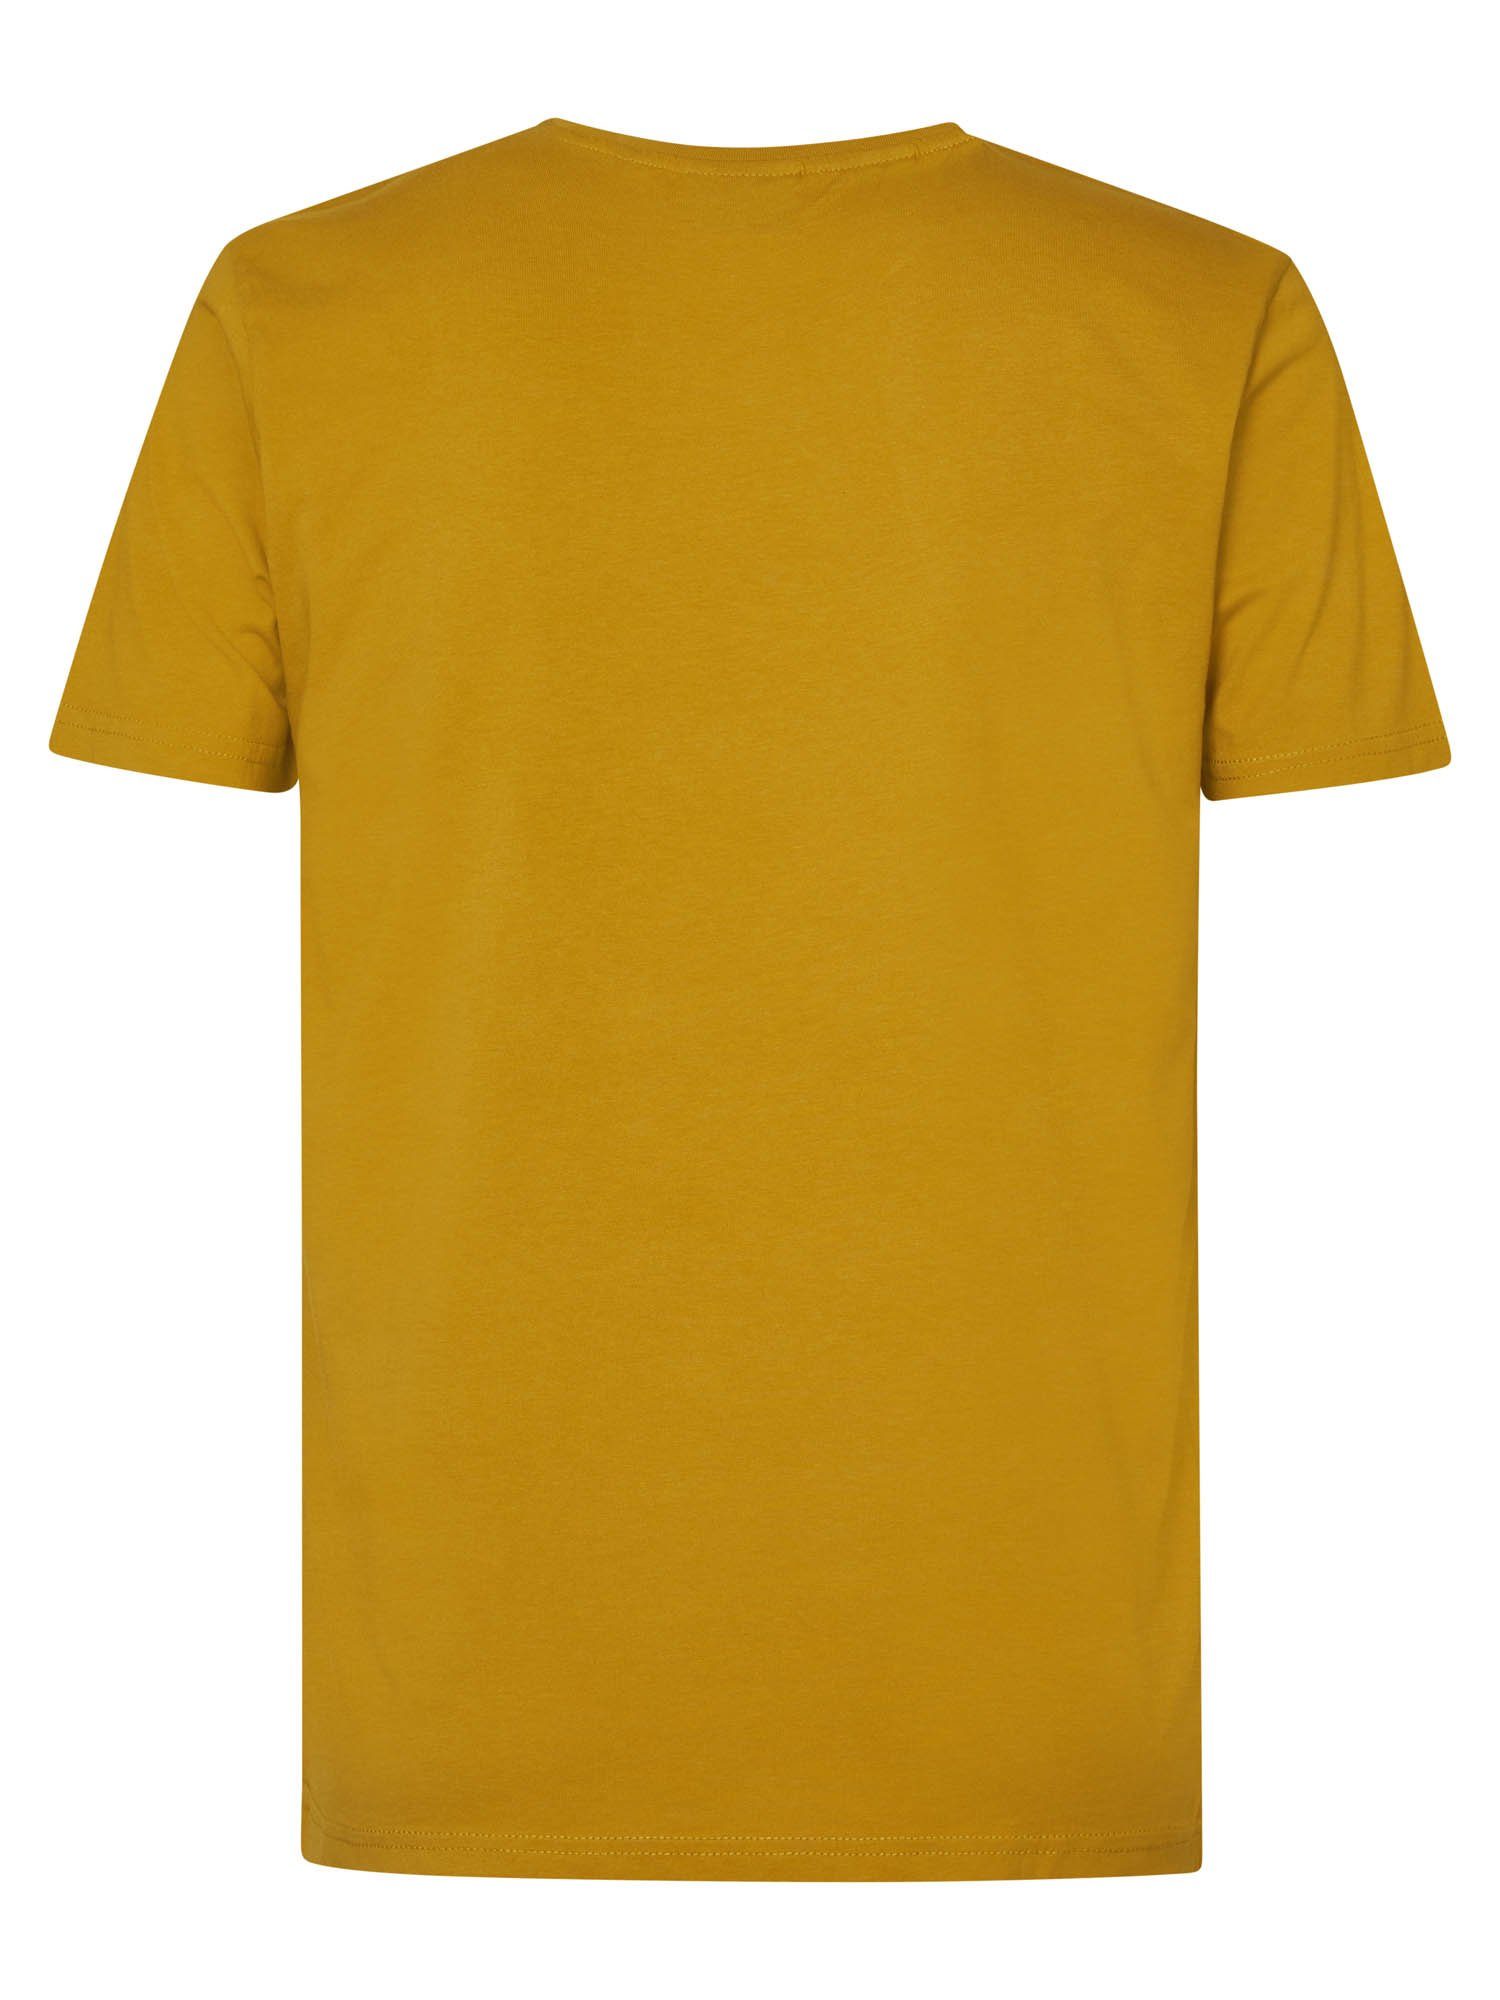 Industries Petrol T-Shirt Gelb Men T-Shirt SS